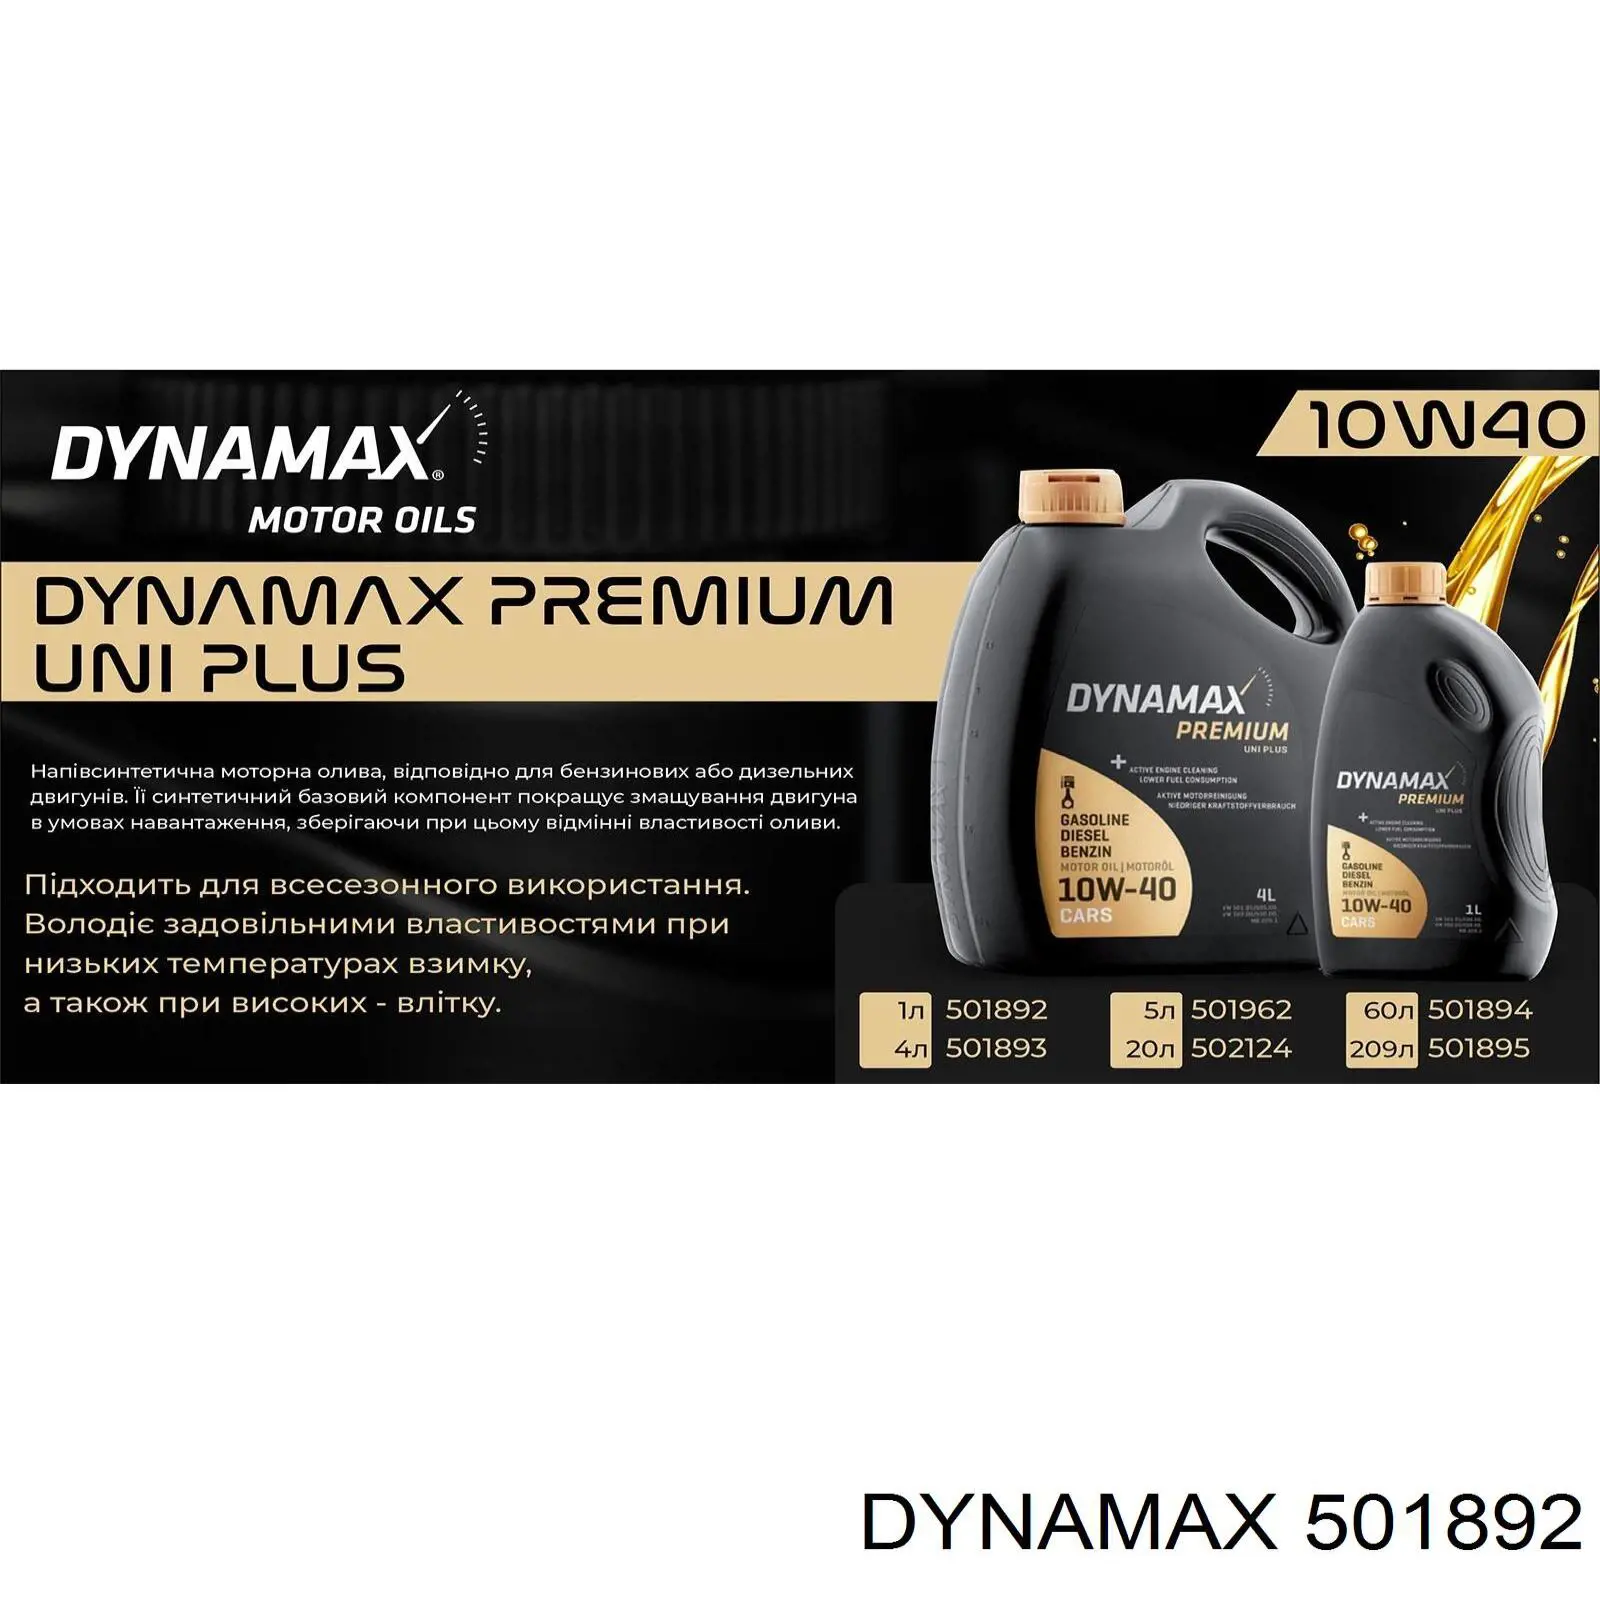 Dynamax (501892)